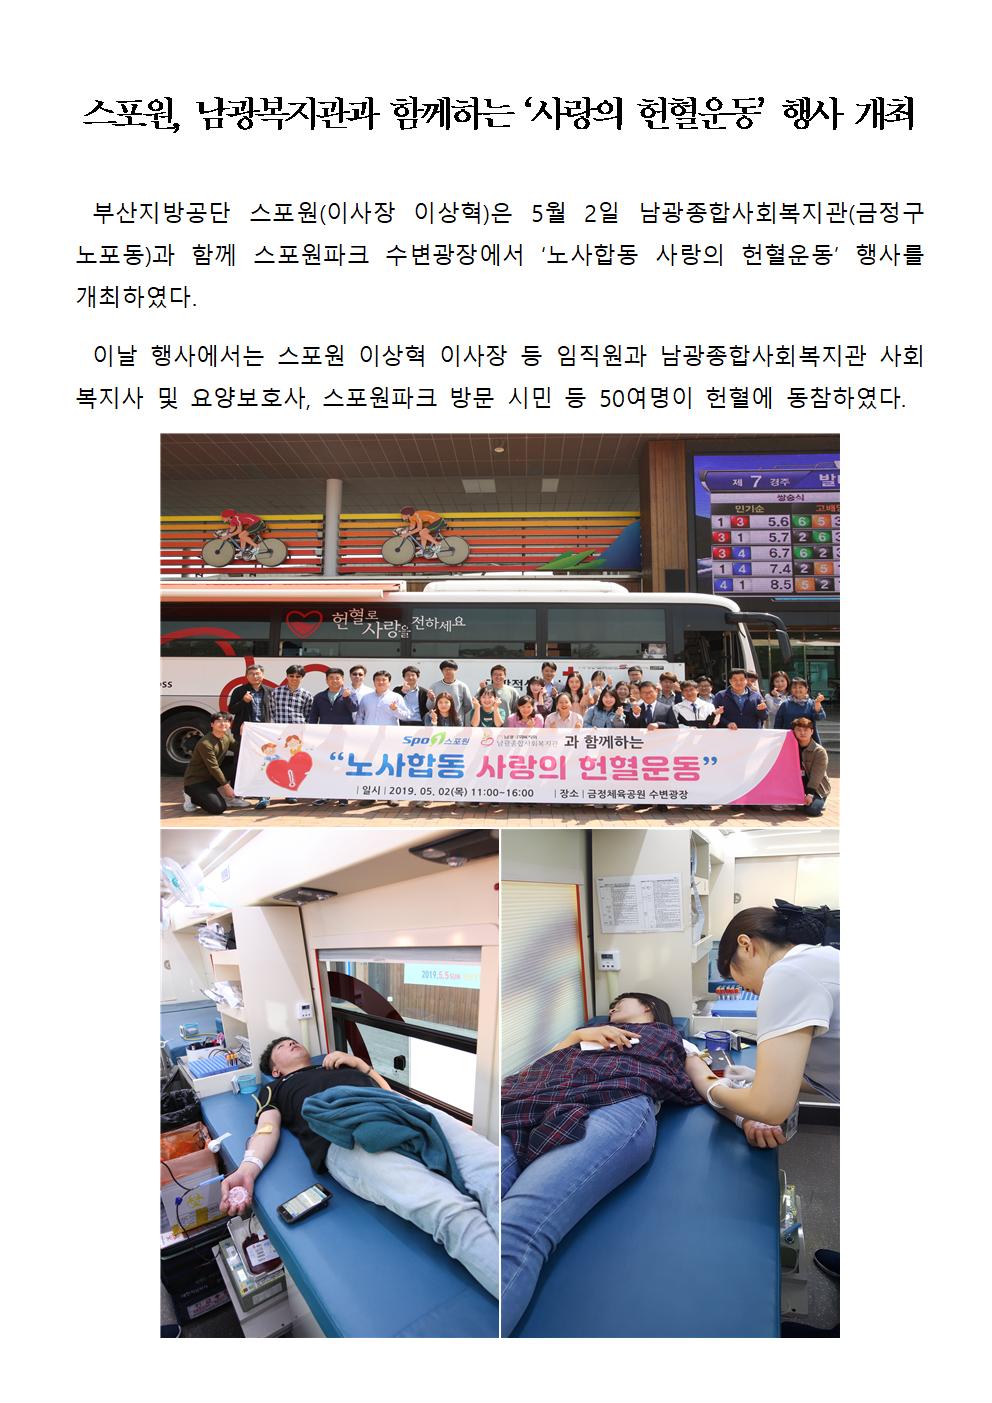 스포원, 남광복지관과 함께하는 사랑의 헌혈운동 행사 개최001.jpg